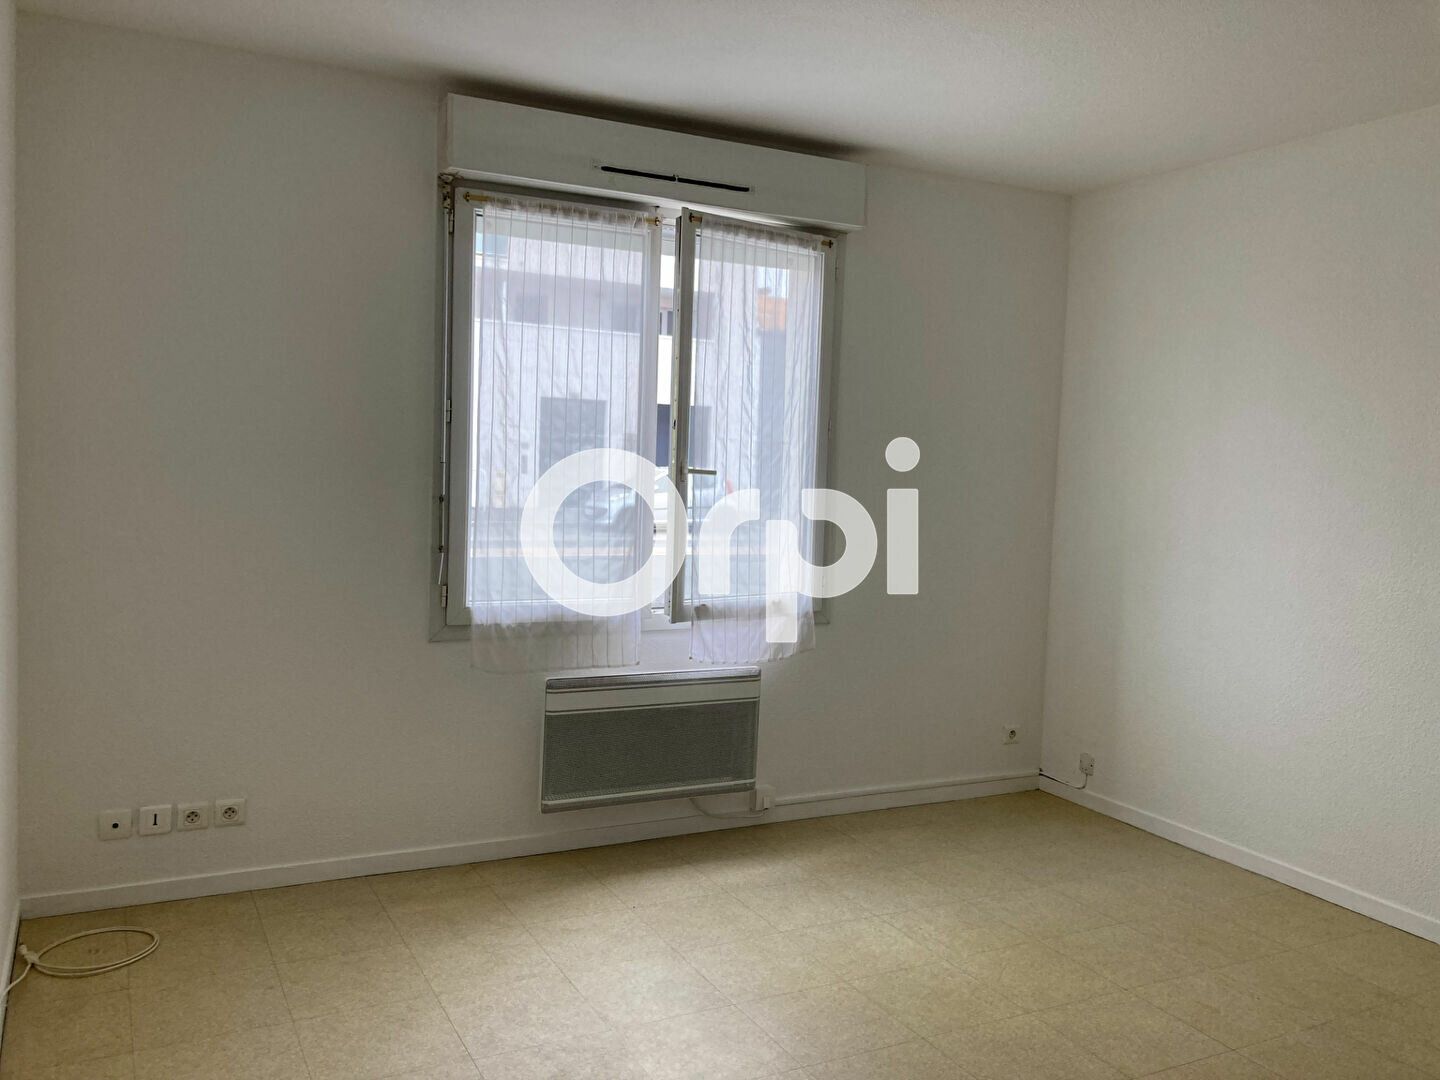 Appartement à vendre 1 20.44m2 à La Rochelle vignette-3